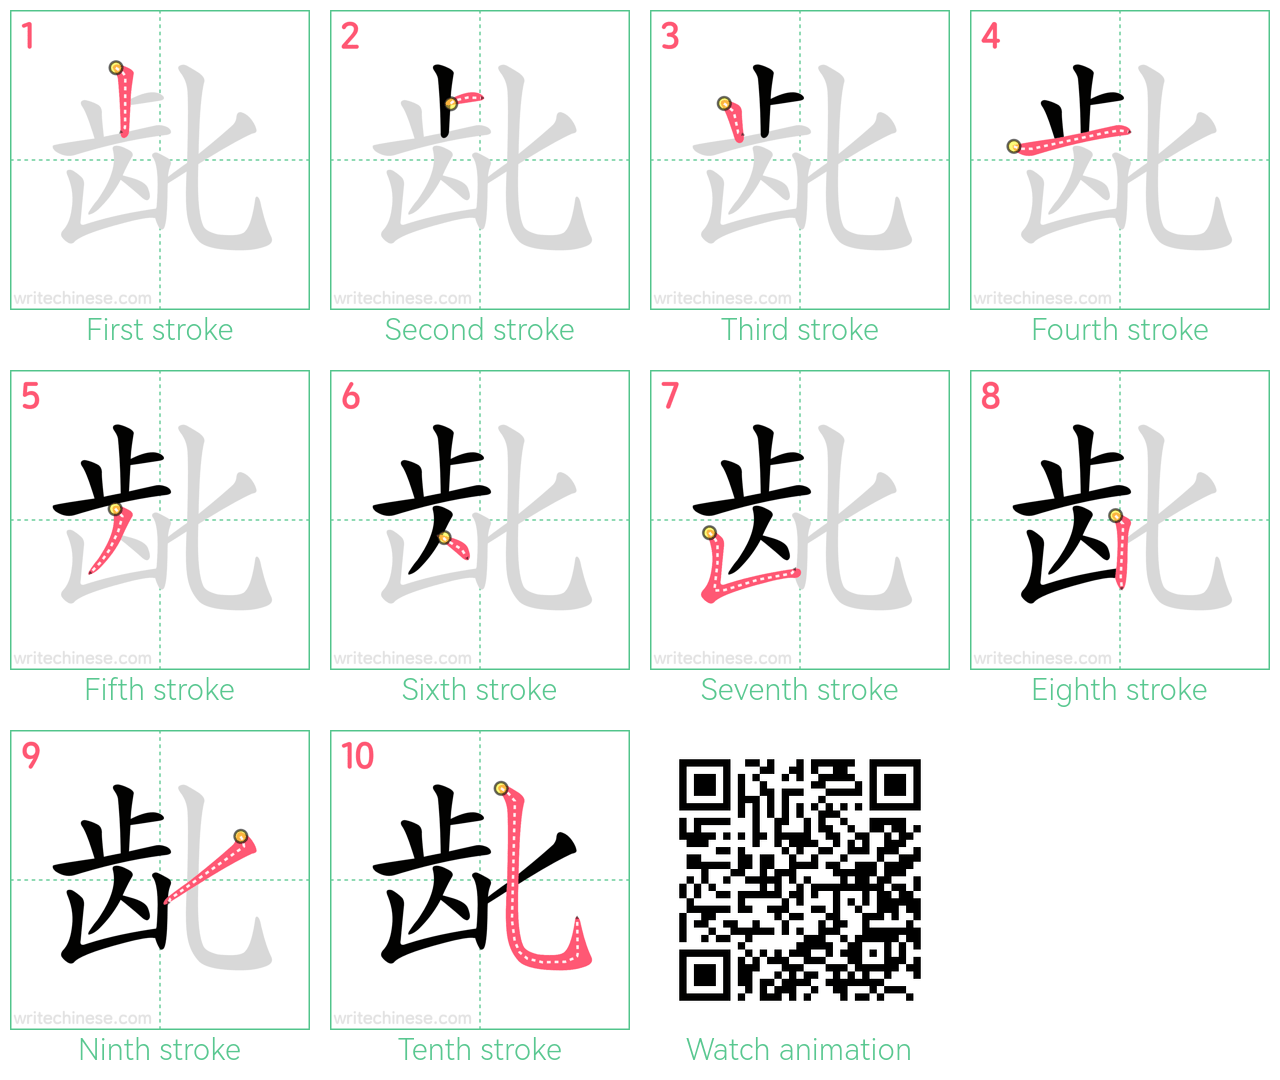 龀 step-by-step stroke order diagrams